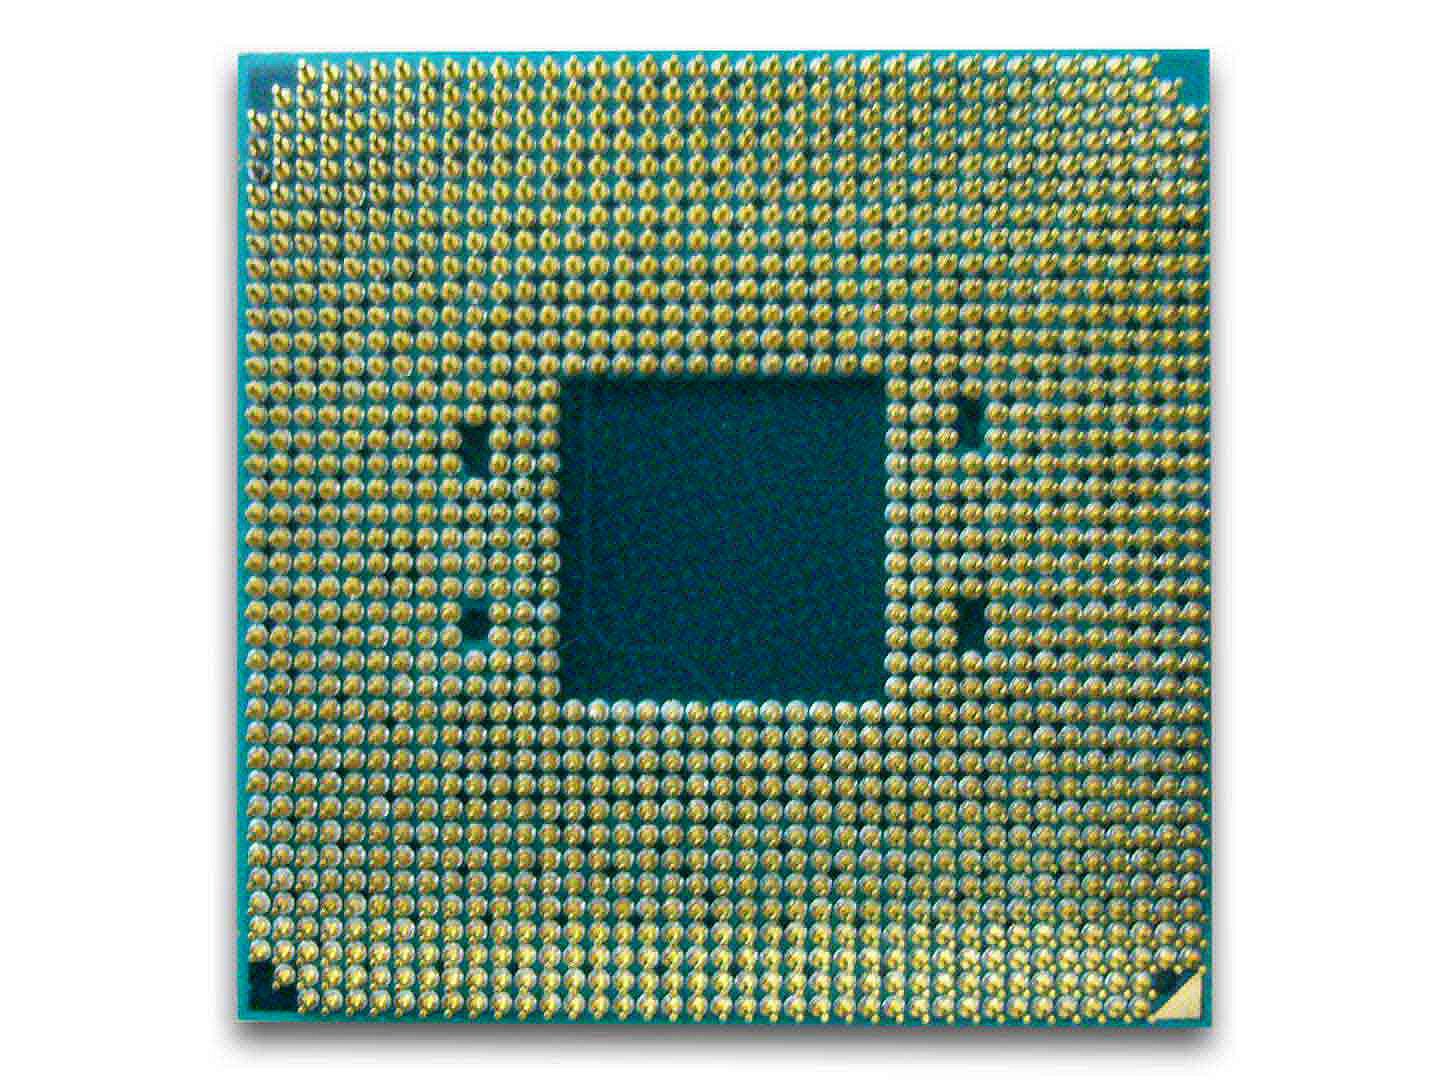 AMD Ryzen 7 PRO 2700